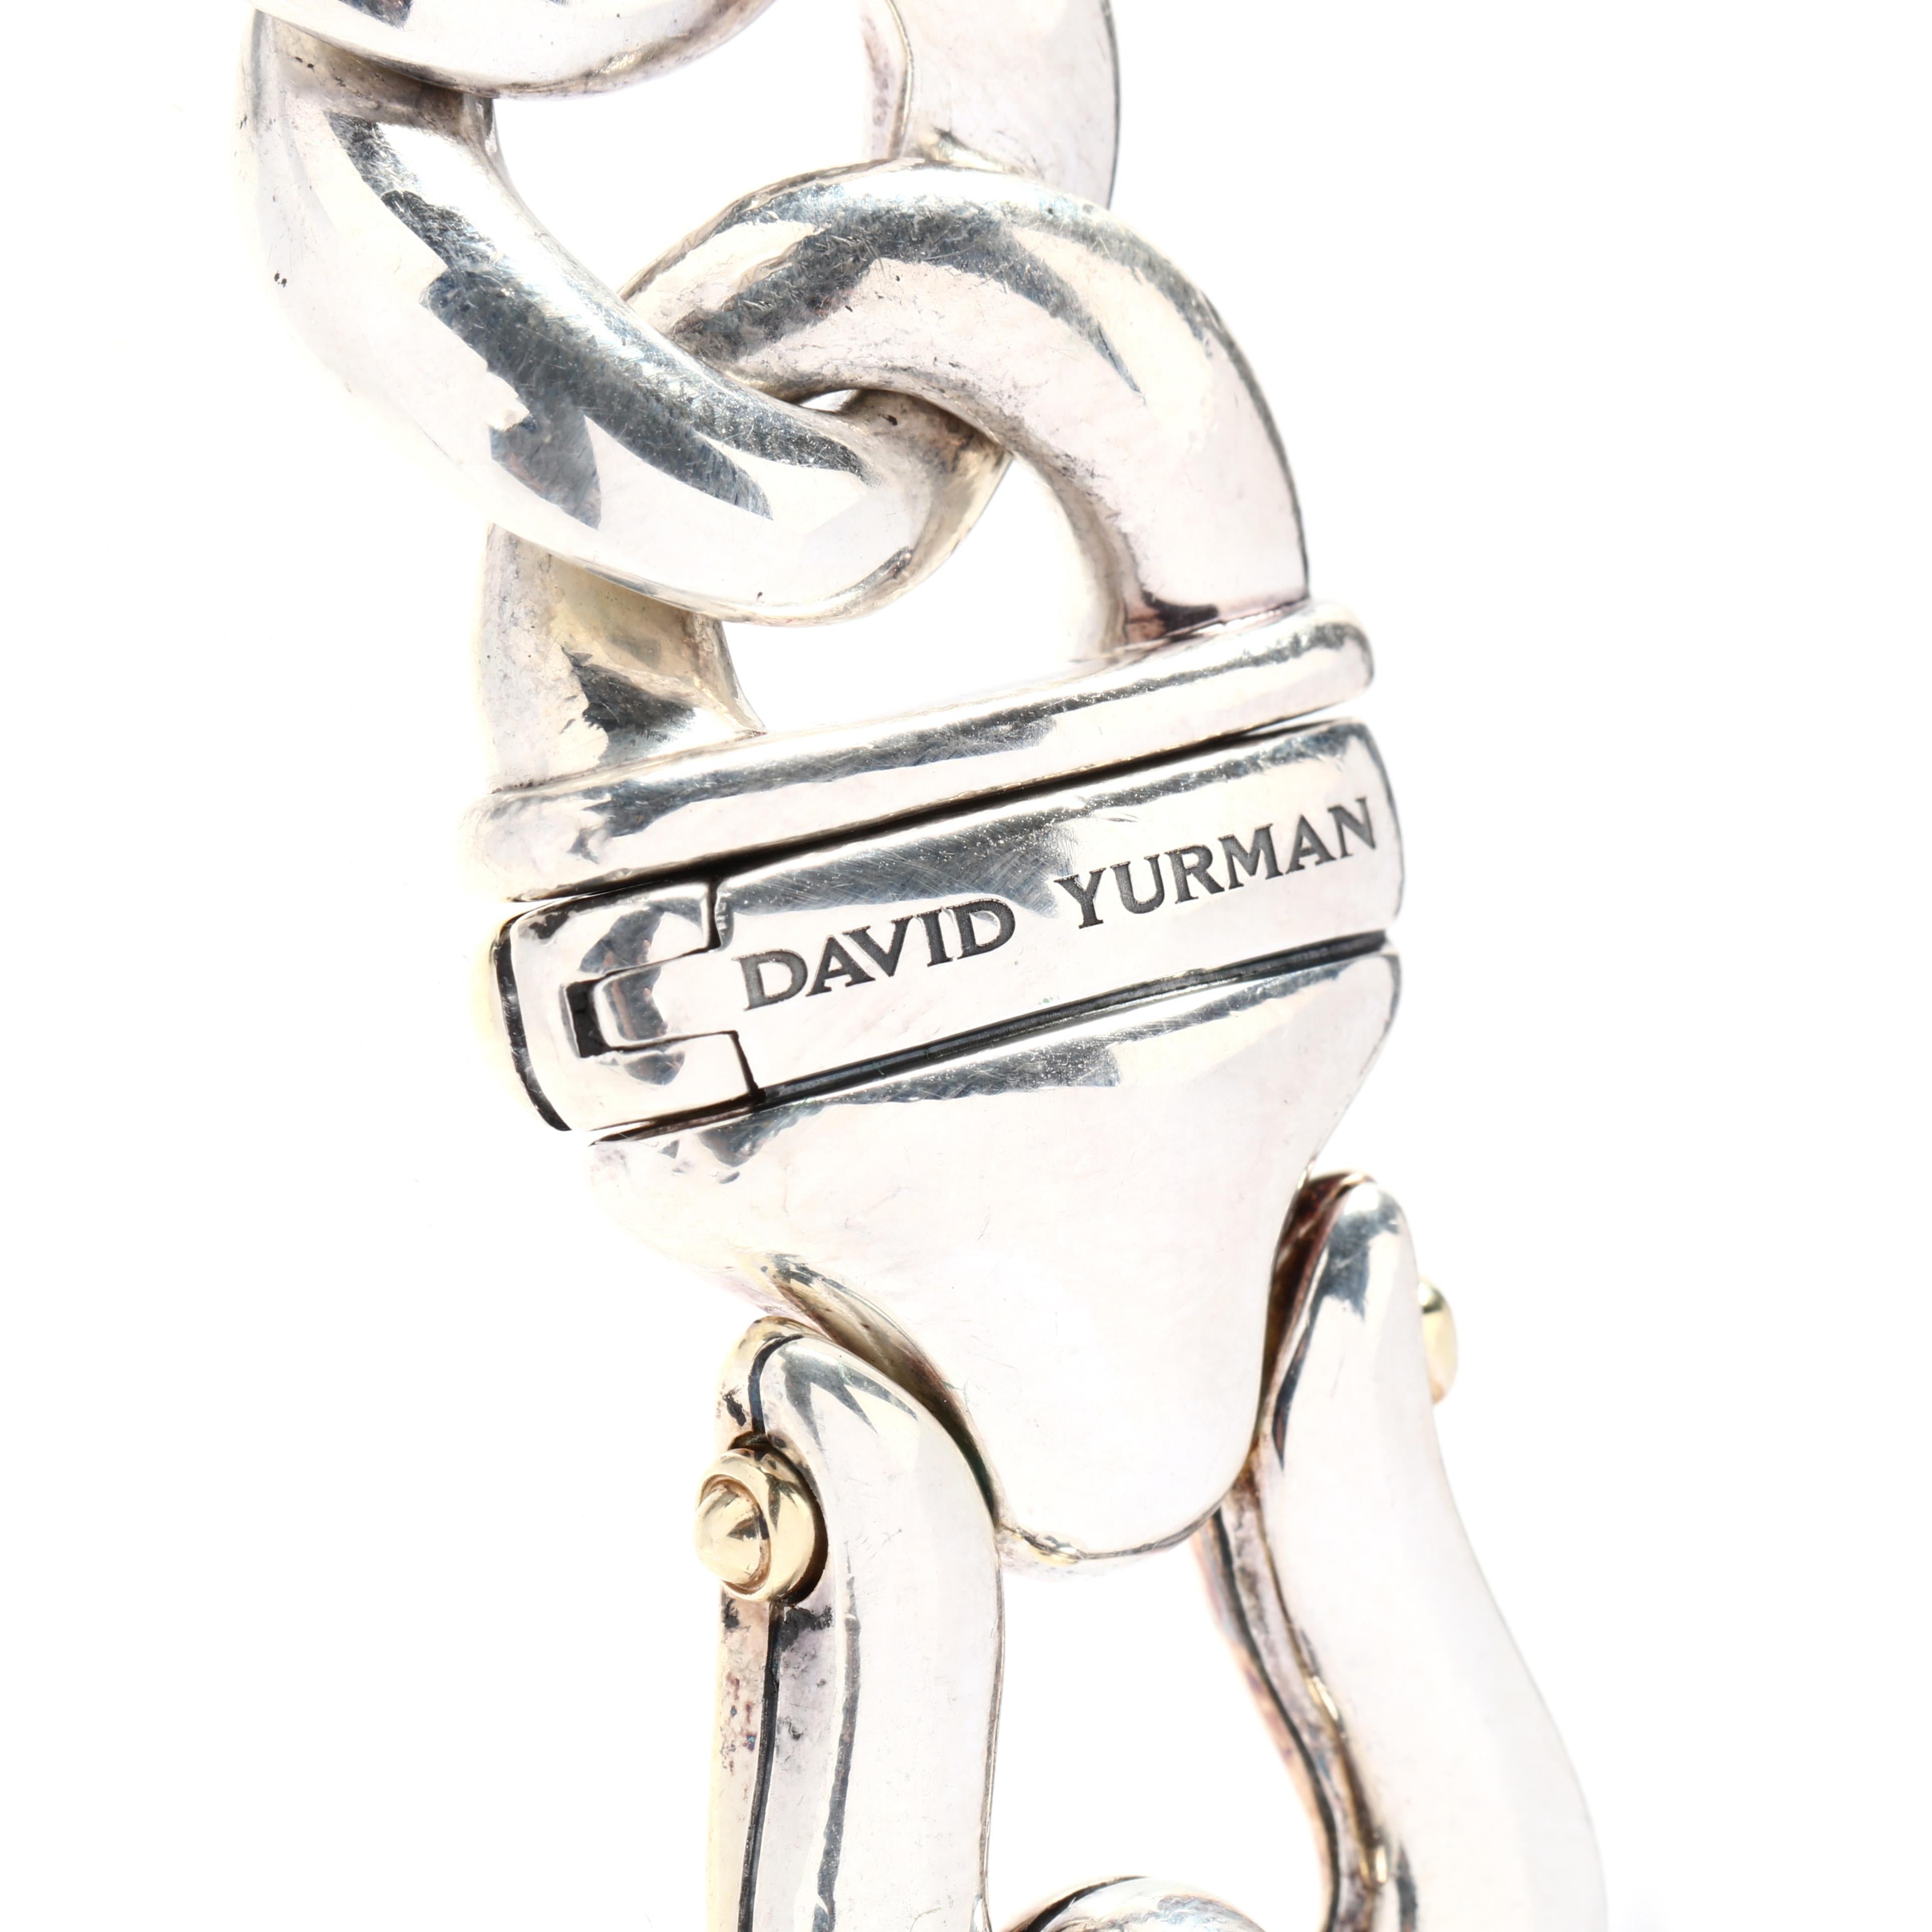 david yurman cuban link chain